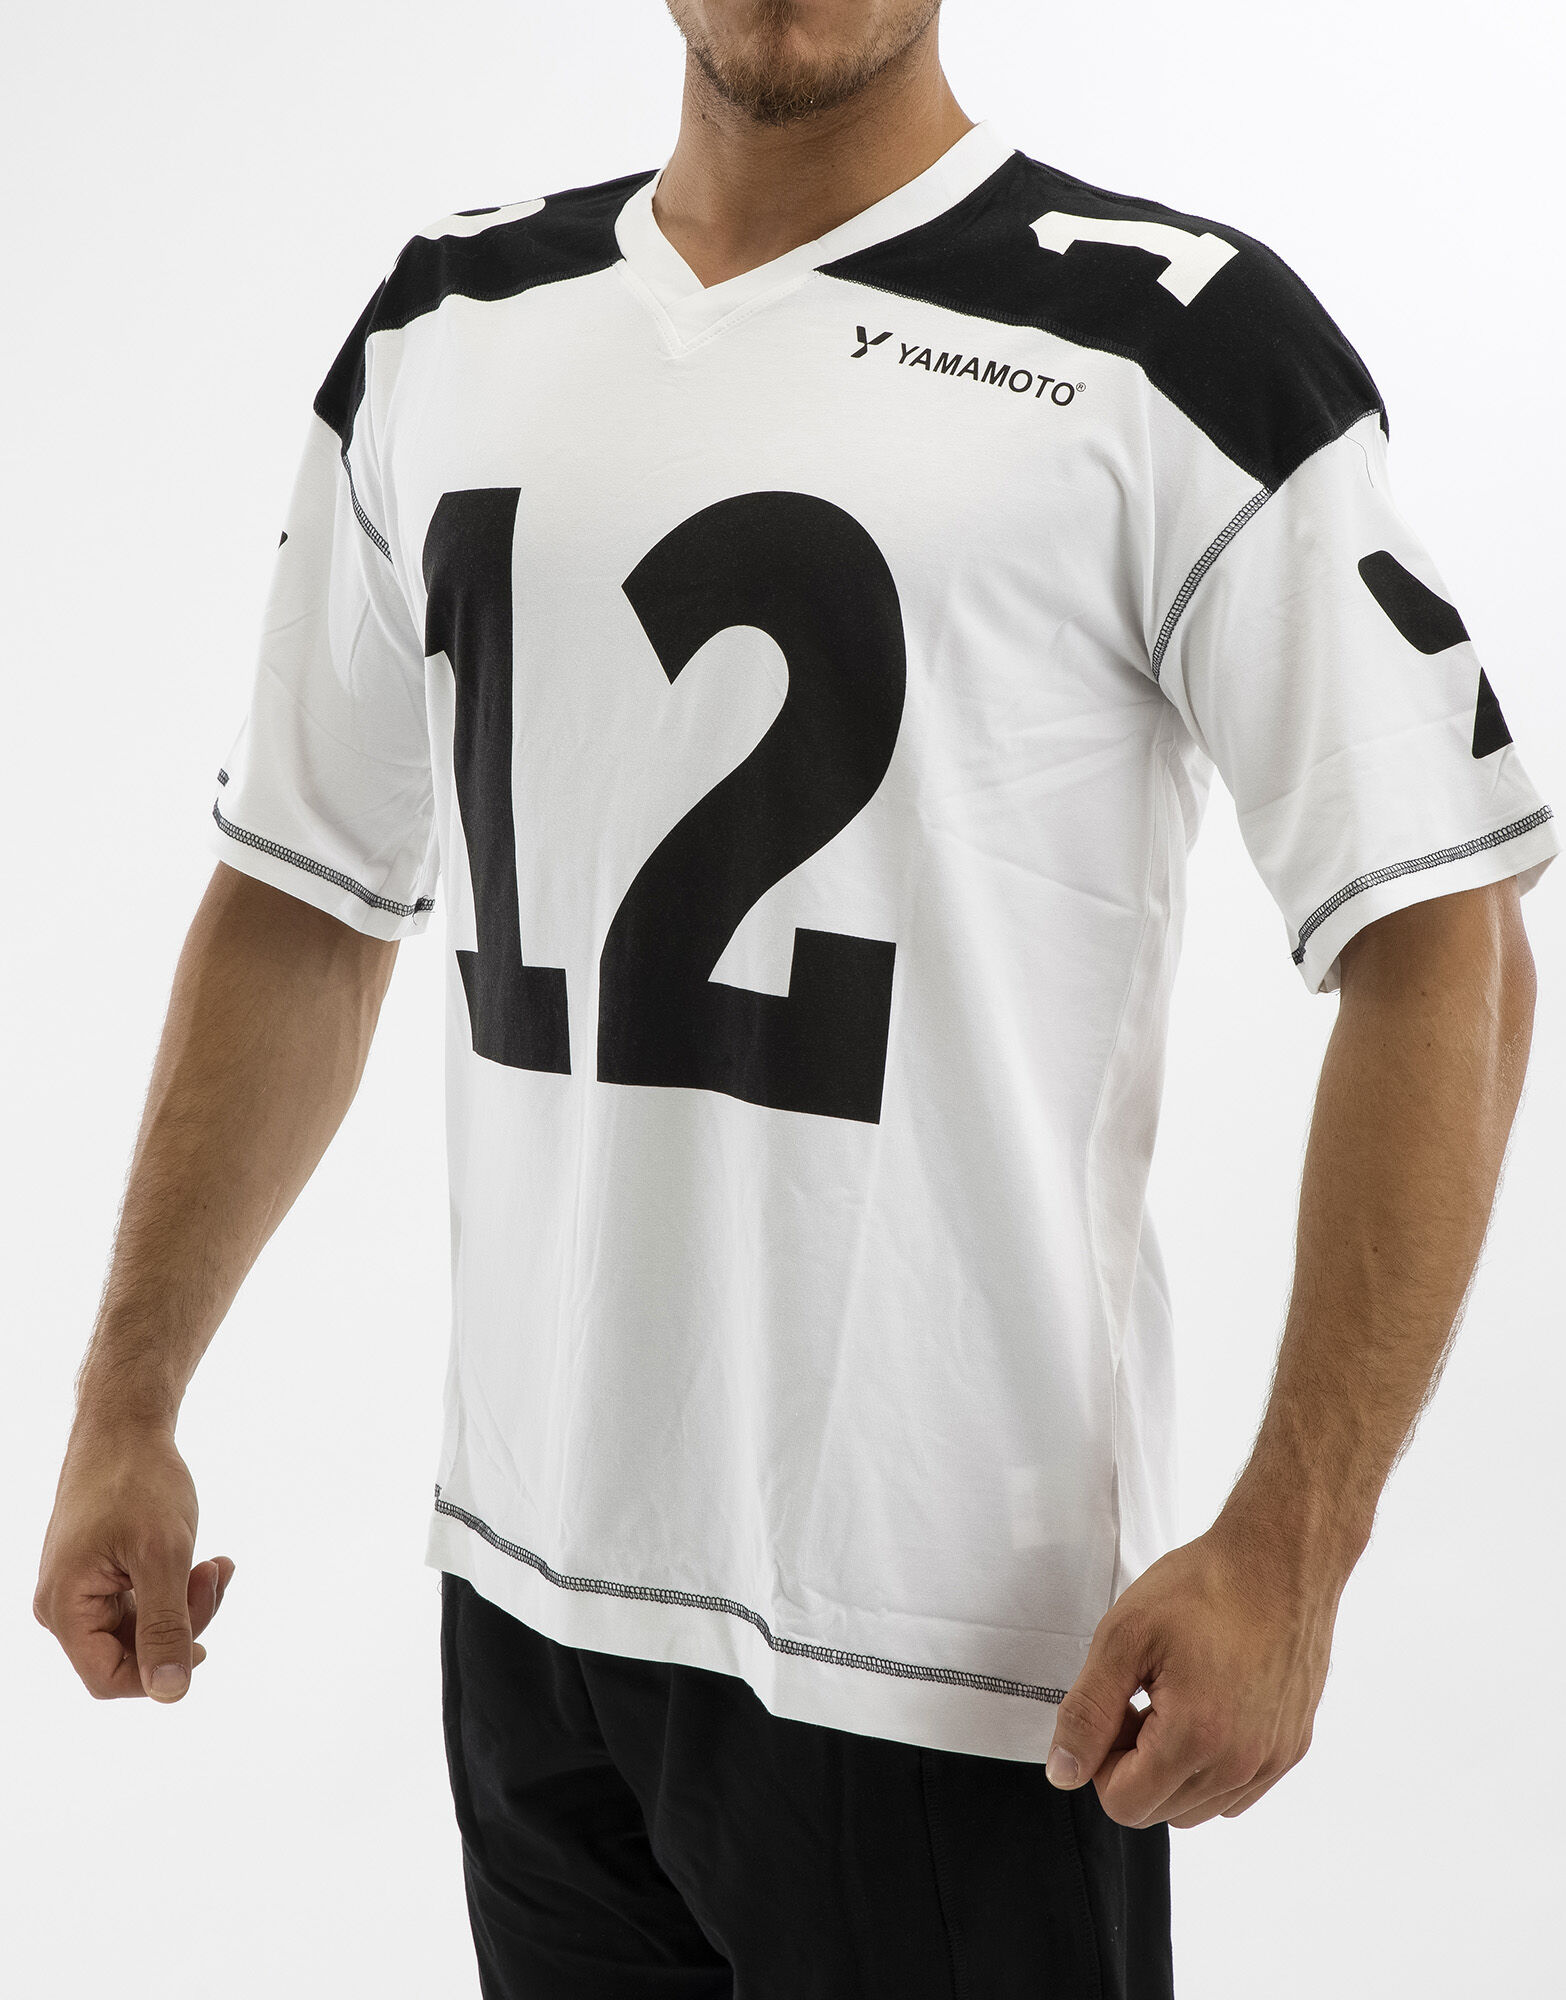 YAMAMOTO OUTFIT Man Football T-Shirt Colore: Bianco/nero Xl